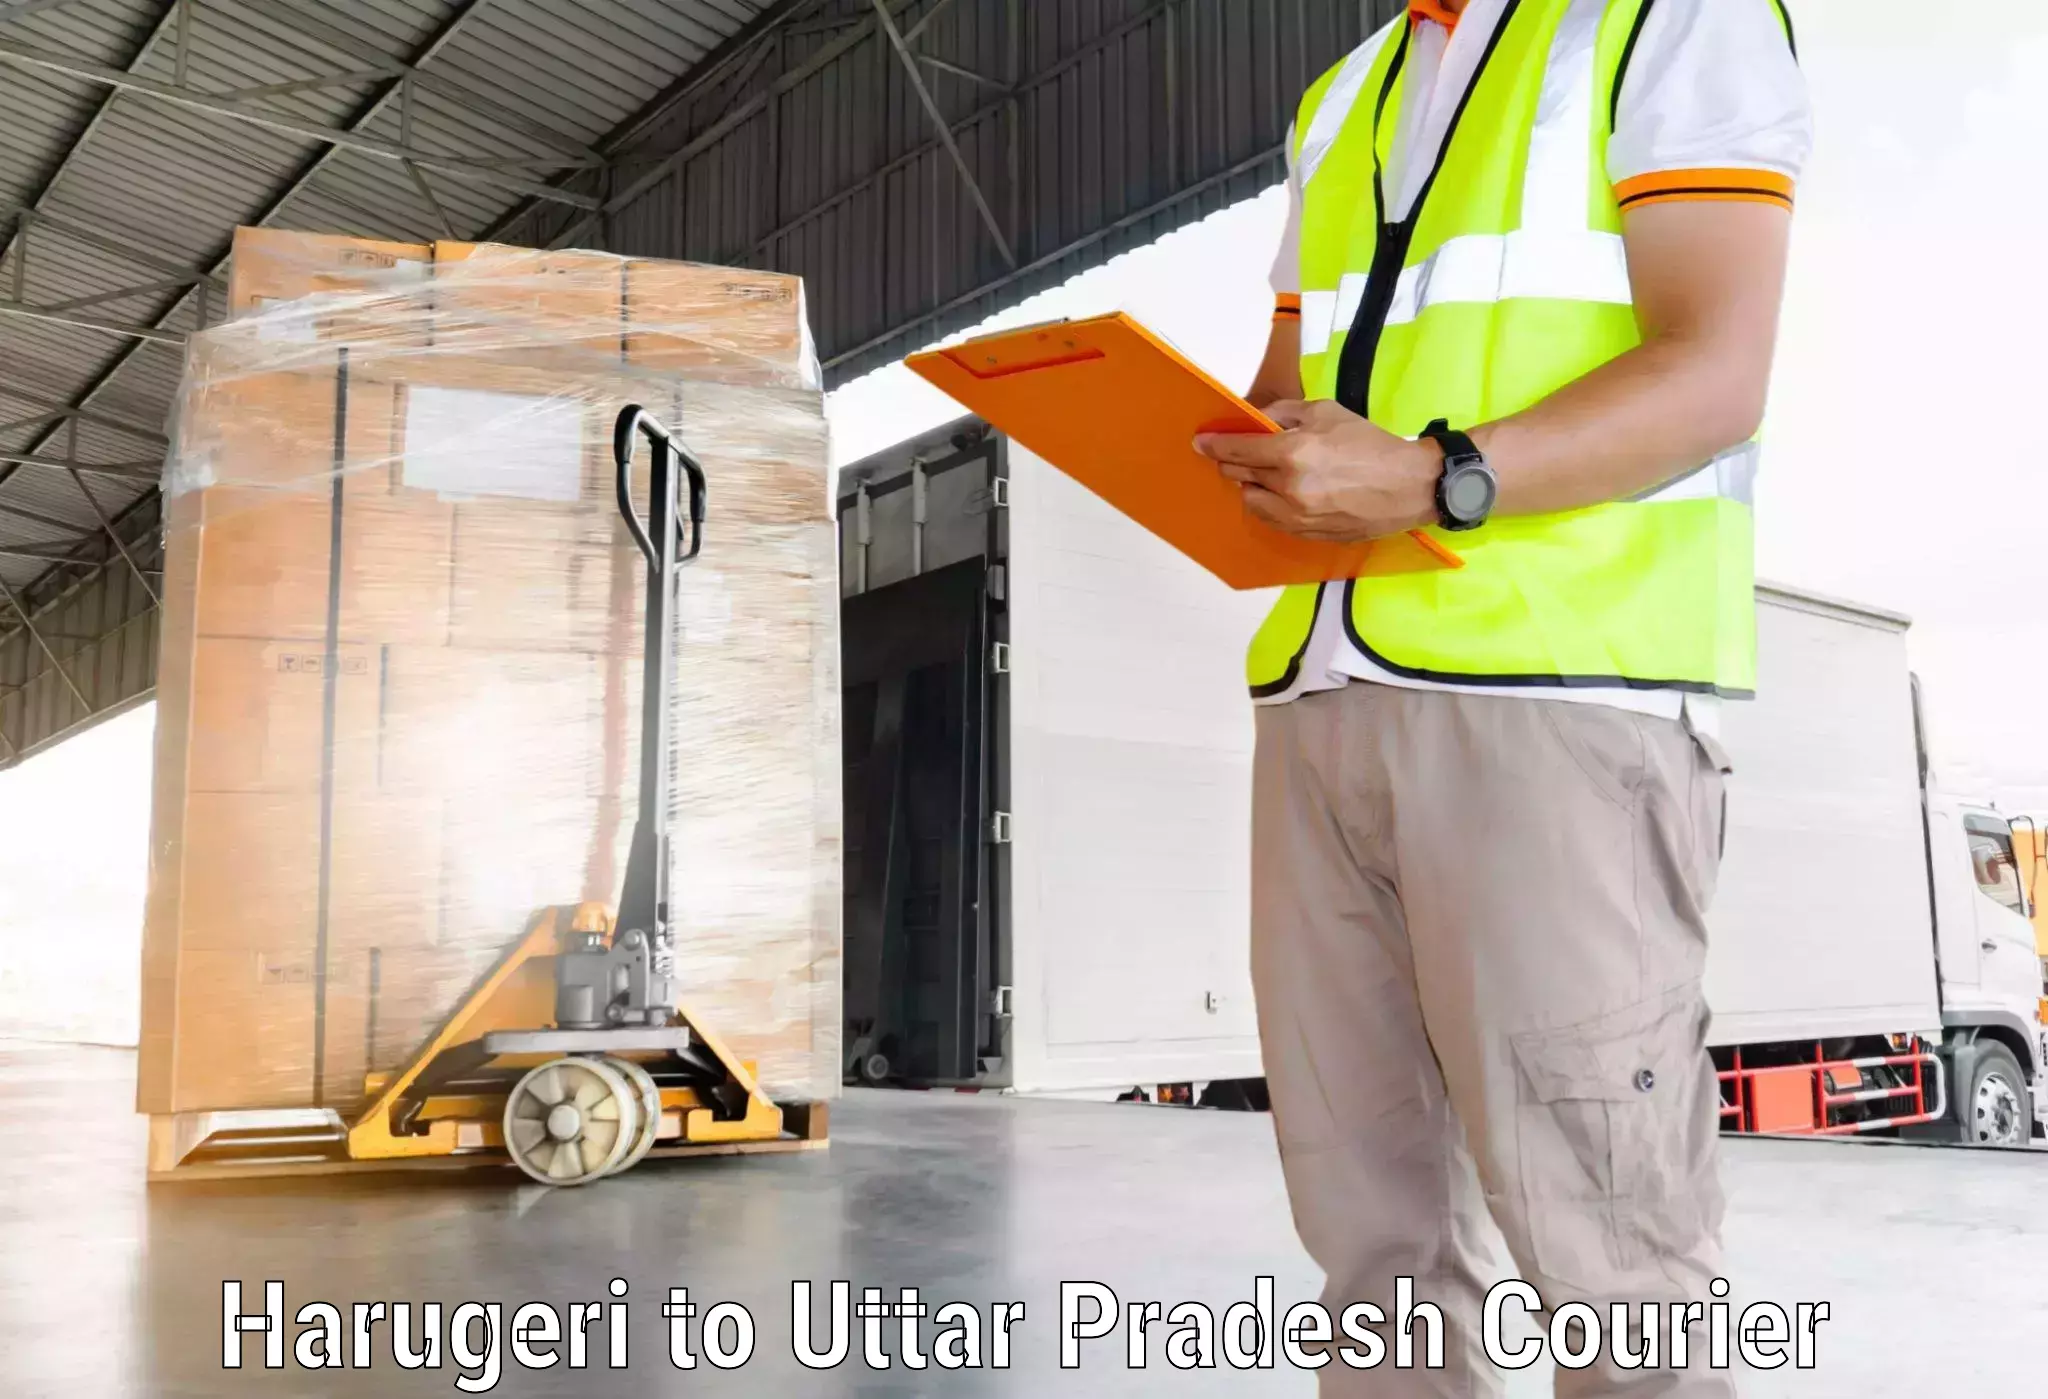 Secure packaging Harugeri to Uttar Pradesh